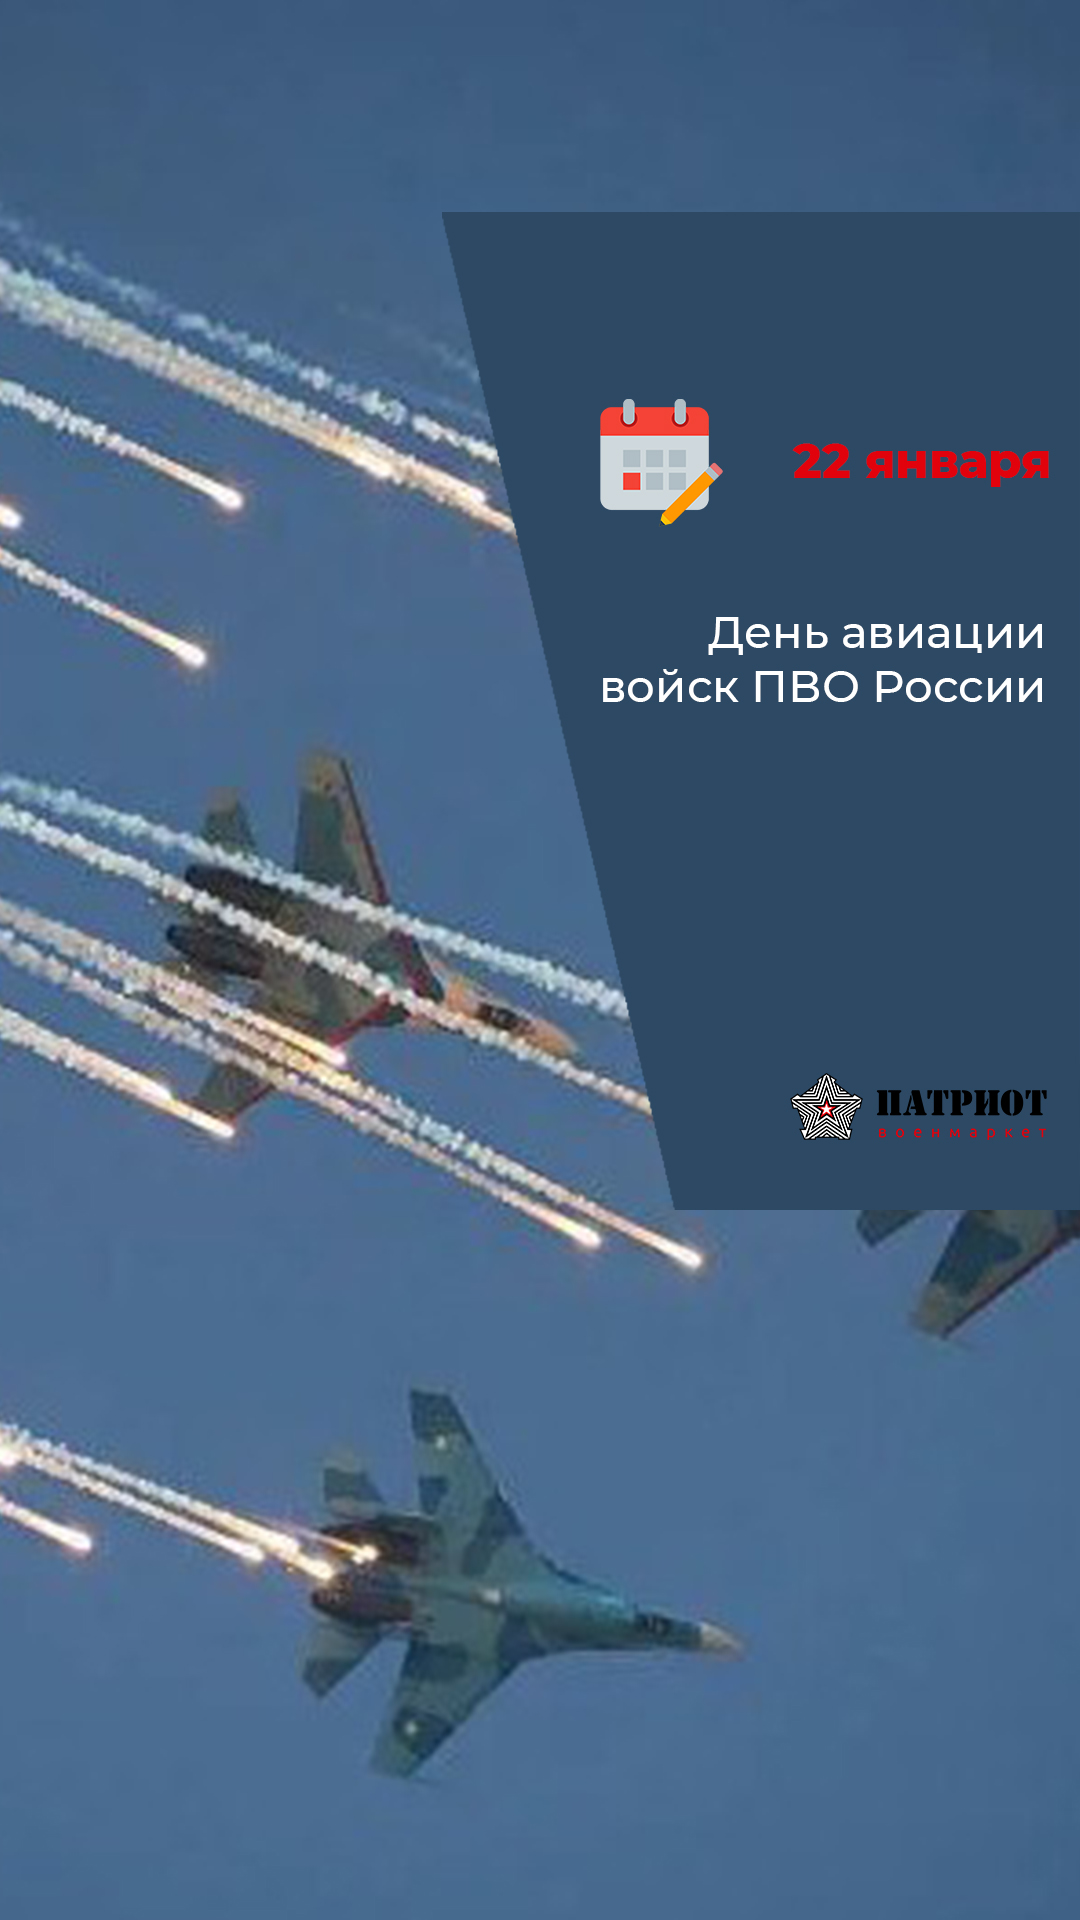 22 января - День авиации войск ПВО России